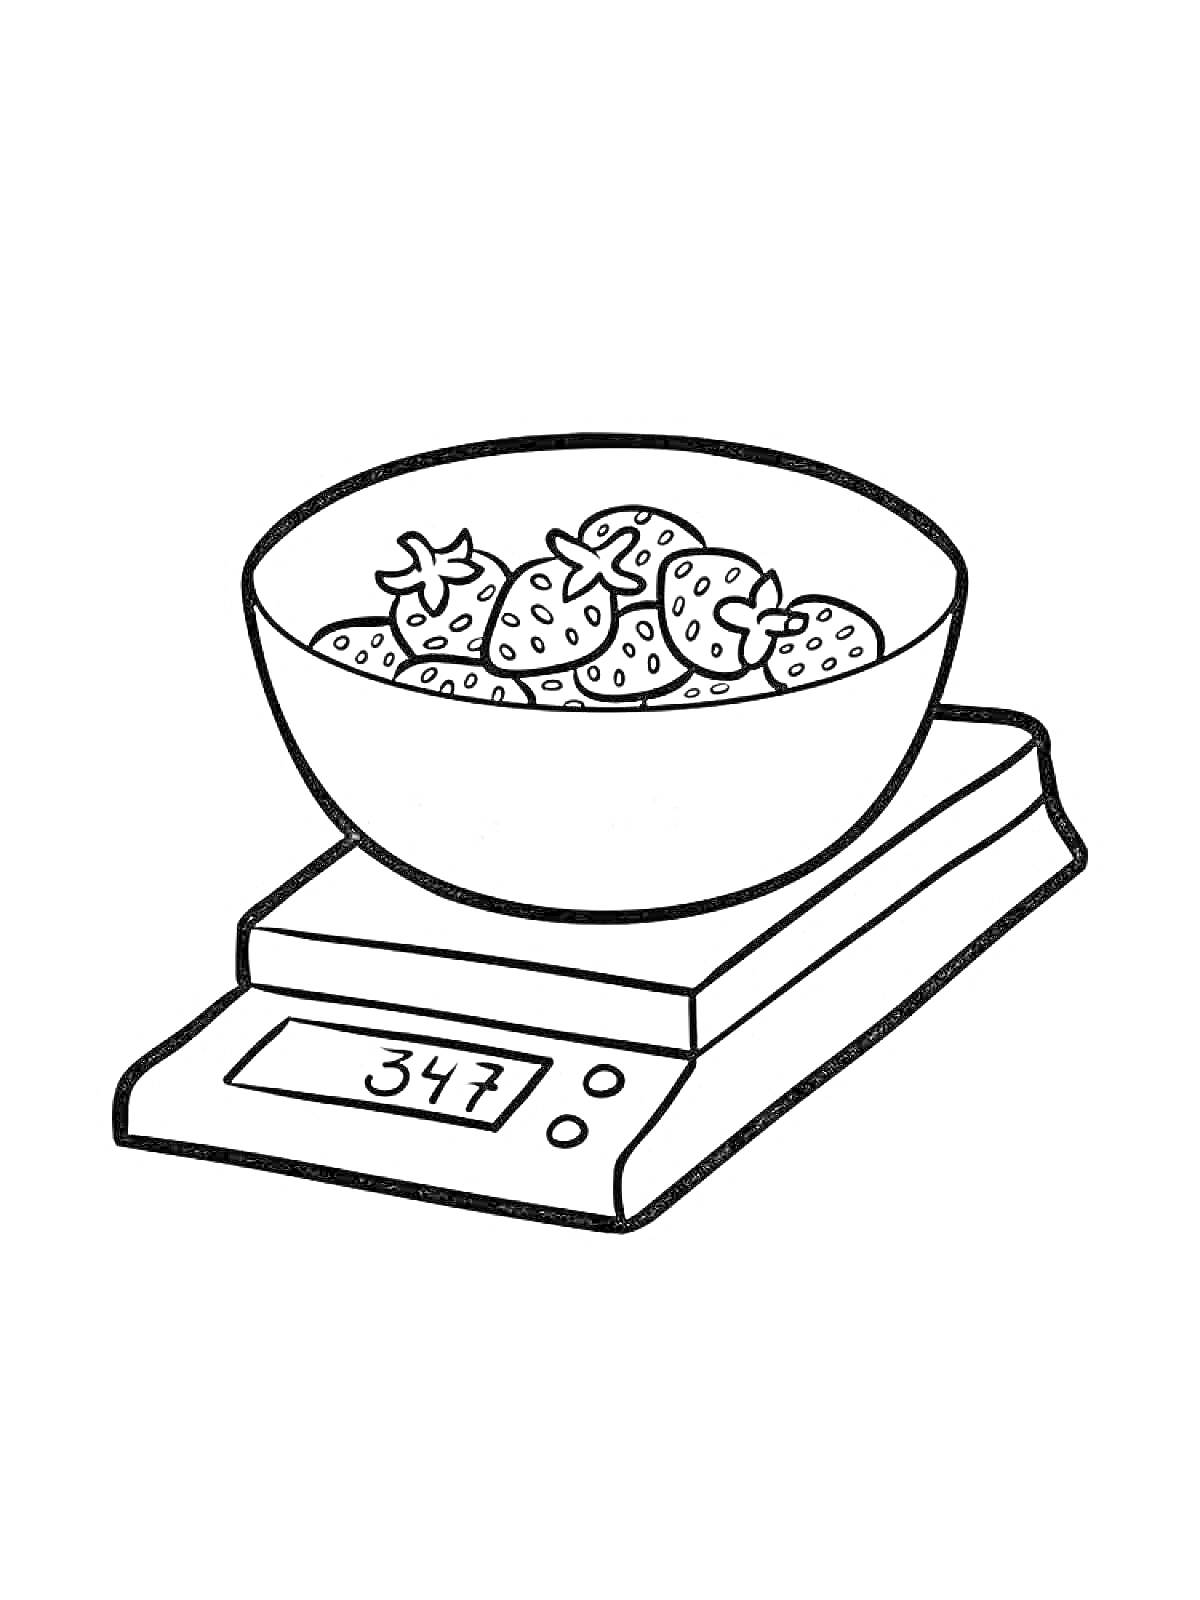 Кухонные весы с клубникой в миске и дисплеем, показывающим вес 347 грамм.